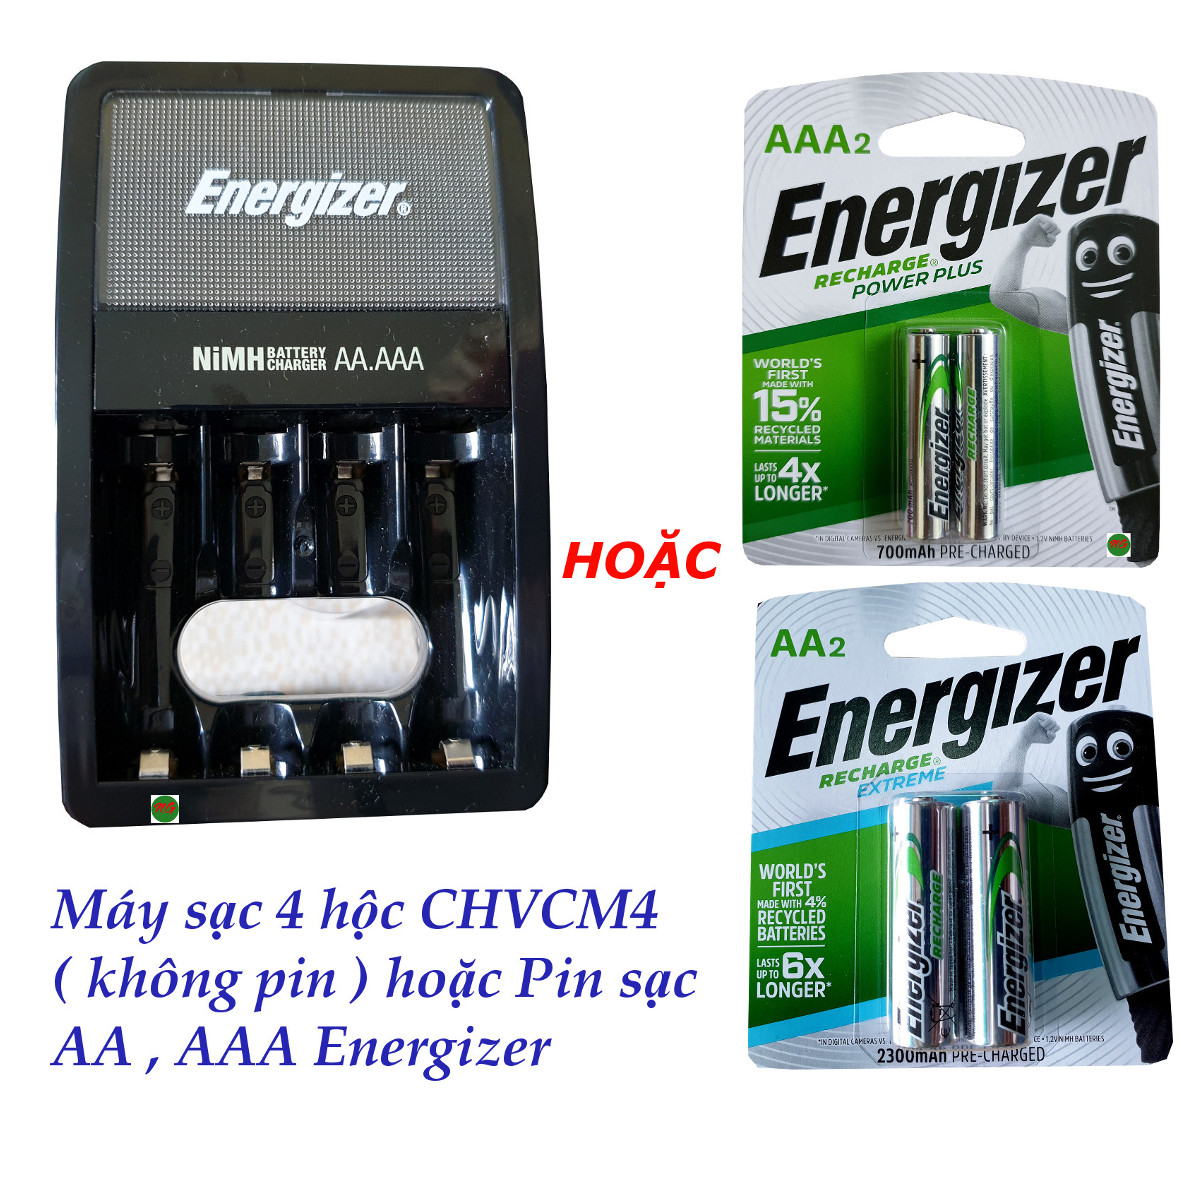 Máy sạc 4 hộc không pin  CHVCM4  và các loại pin sạc AA , AAA Energizer